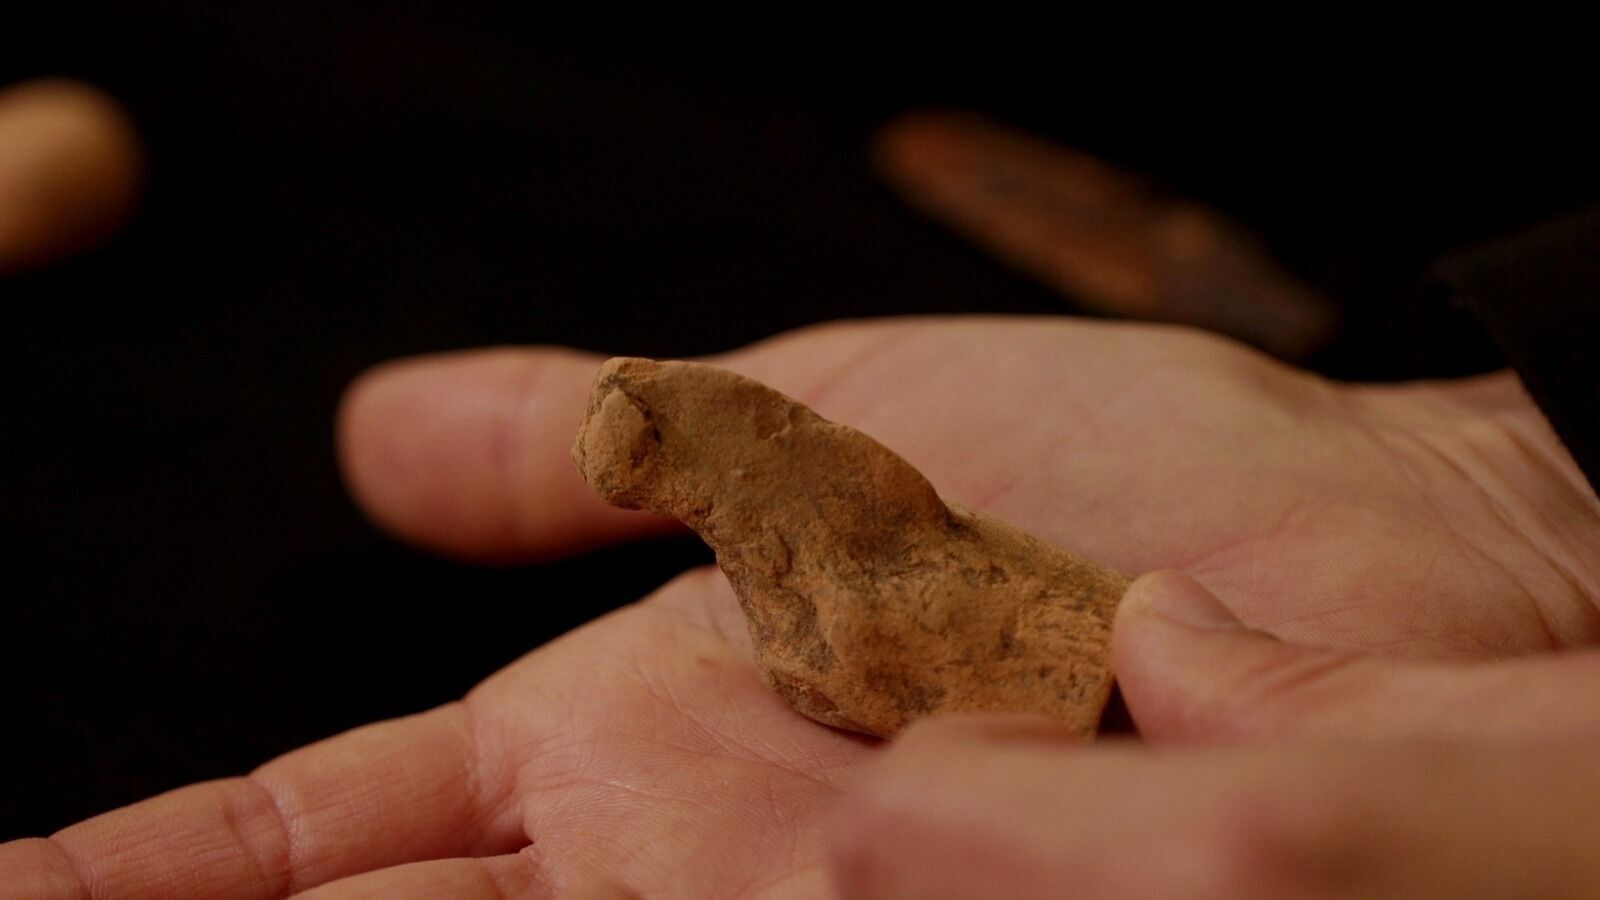 Artifacts found in Jerusalem